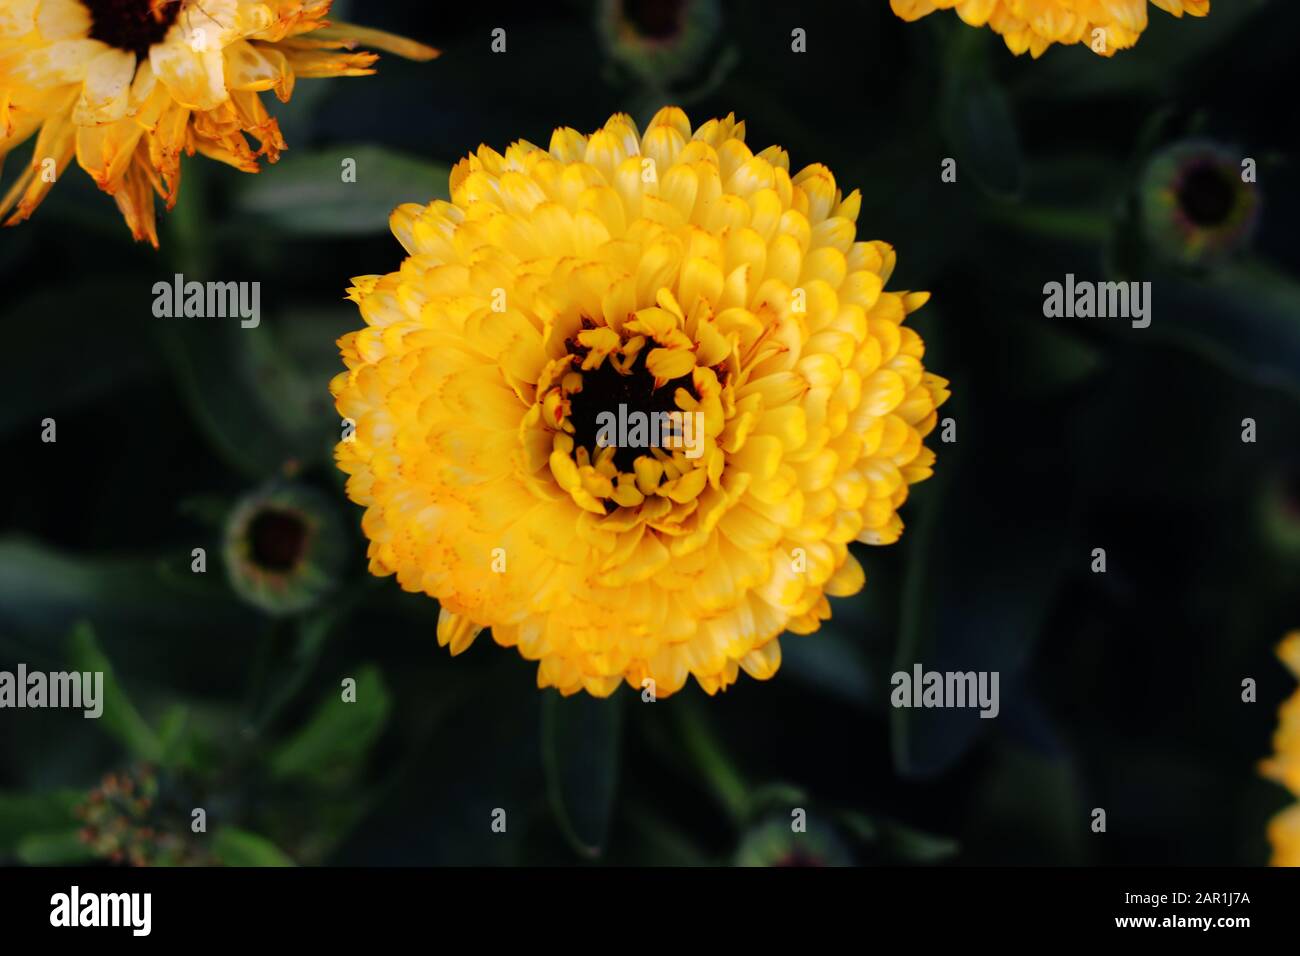 Topf Marigold, Calendula officinalis schließen sich. Englische Marigold Flower.English Marigold Flowers in voller Blüte.Orange & gelbe Blume auf Blatthintergrund Stockfoto